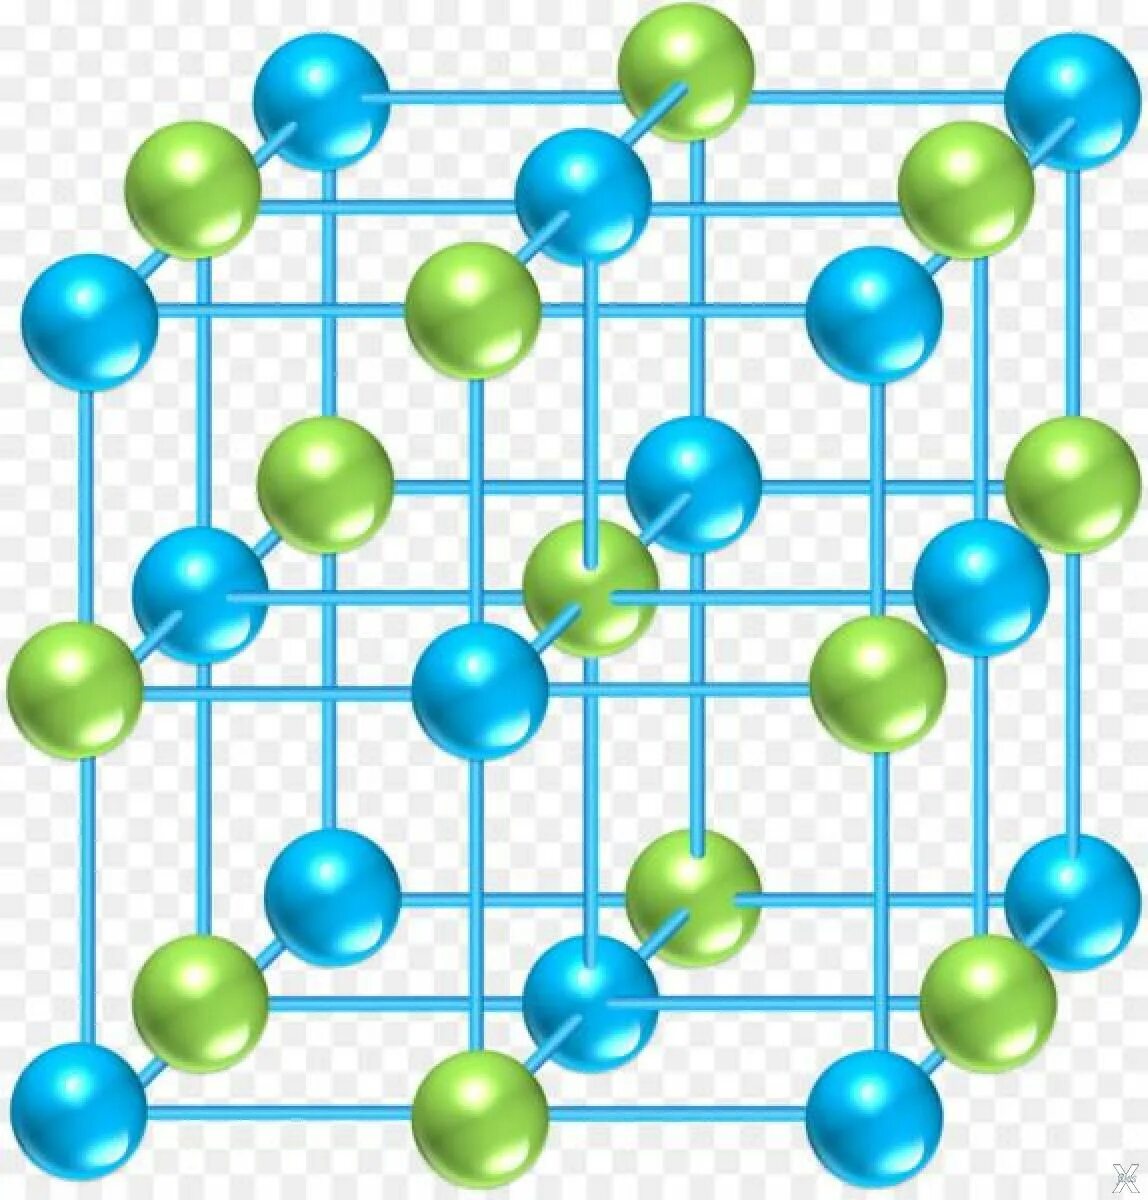 Nacl кристаллическая. Молекула NACL. Кристаллическая решетка алмаза ионная. Кристалическая решётка NACL. Кристаллическая решетка NACL.